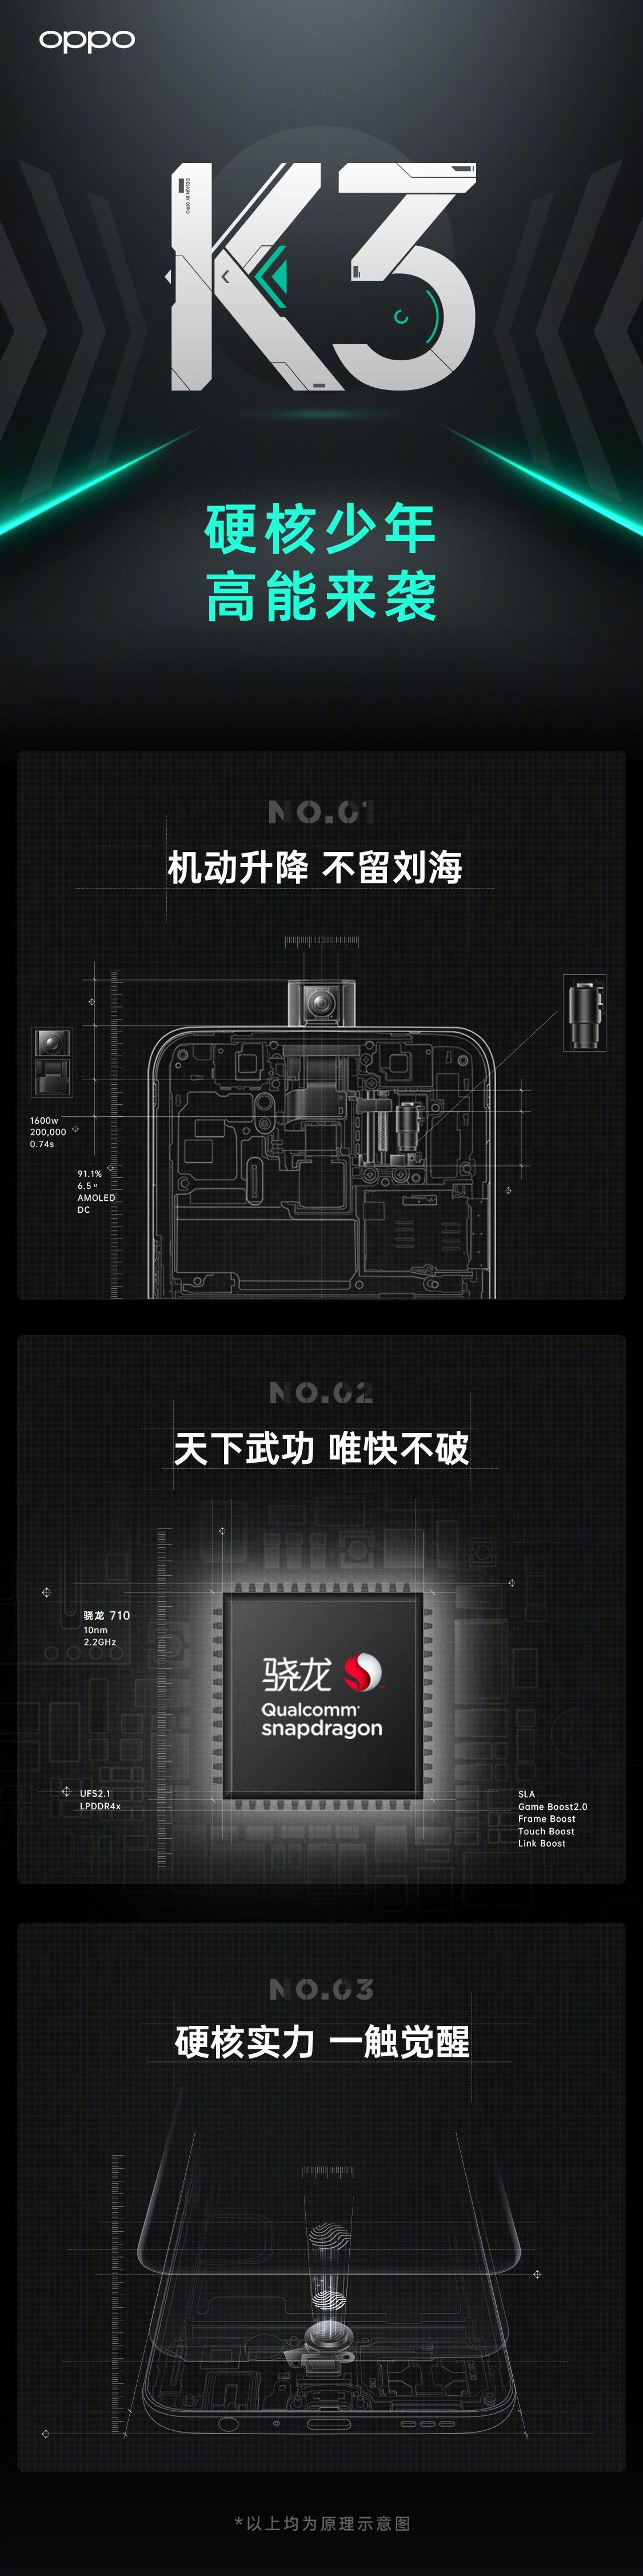 官方公布OPPO K3新特性：升降式前摄+骁龙710